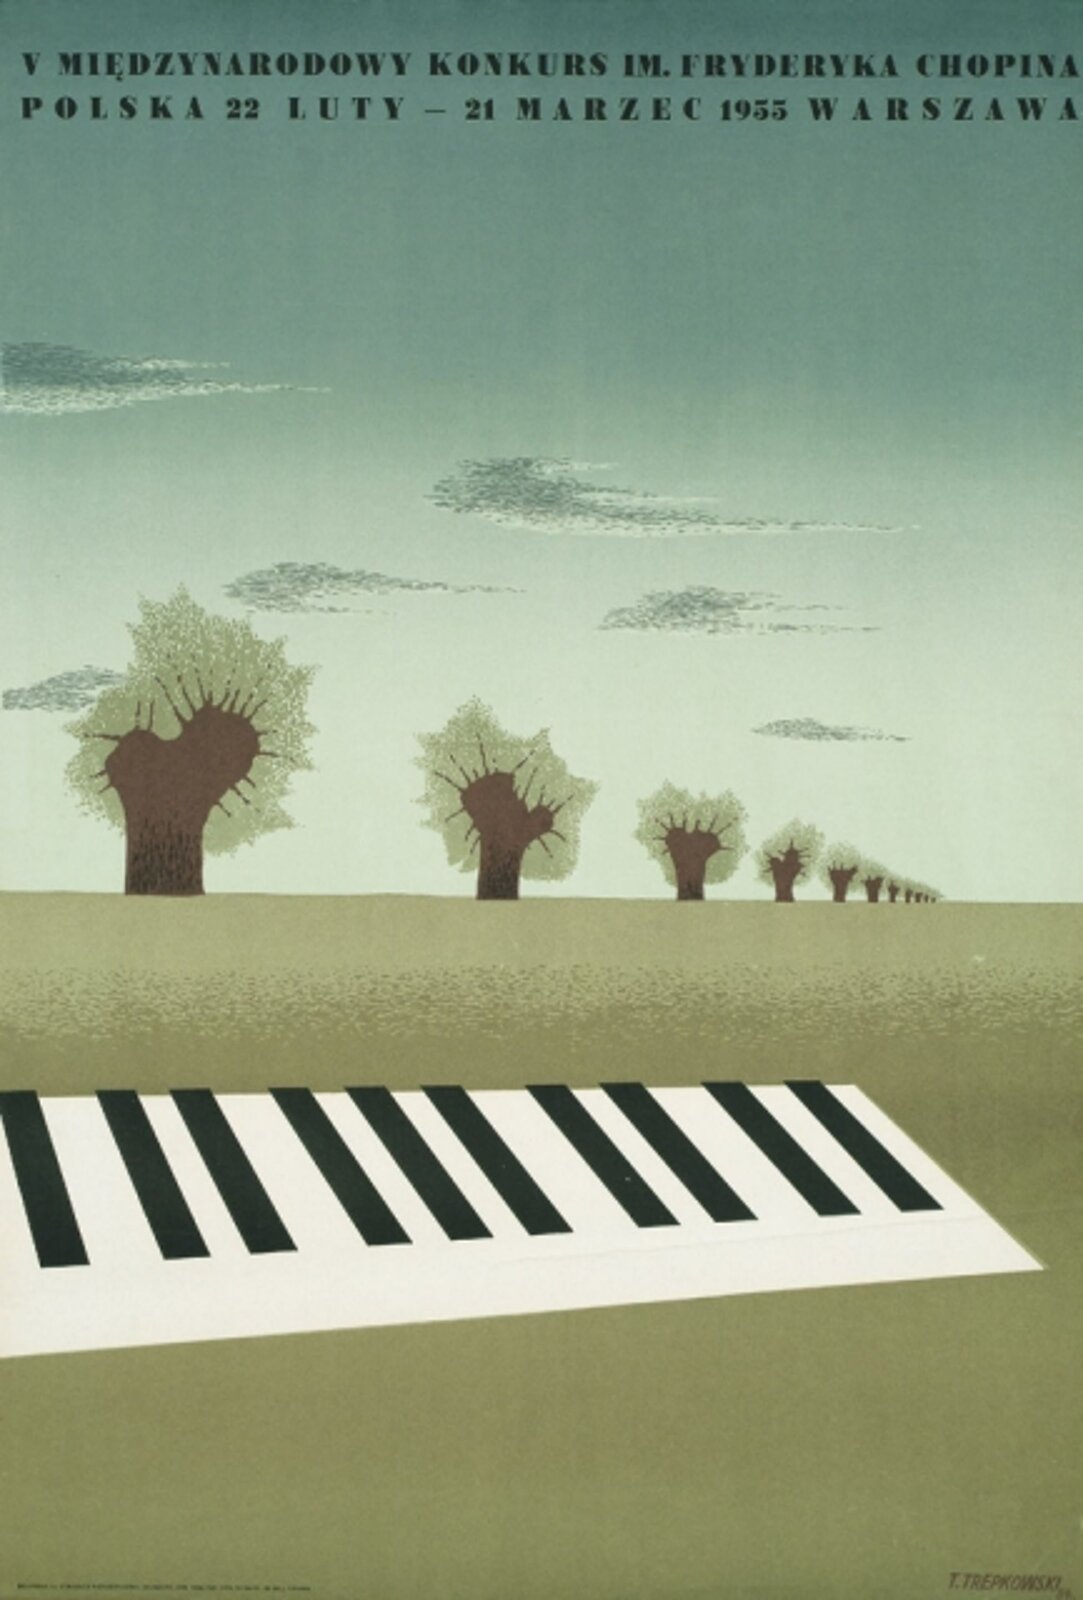 Ilustracja przedstawia plakat promujący V Międzynarodowy Konkurs im. Fryderyka Chopina, który odbył się w dniach 22 luty - 21 marzec 1955 roku w Warszawie. Plakat przedstawia czarno-białą klawiaturę foretpianu, która leży na zielonej trawie. W tle widoczne są drzewa, które są ułożone w linii. Jest ich 11. Nad drzewami widoczne jest niebieskie niebo z szarymi chmurami.